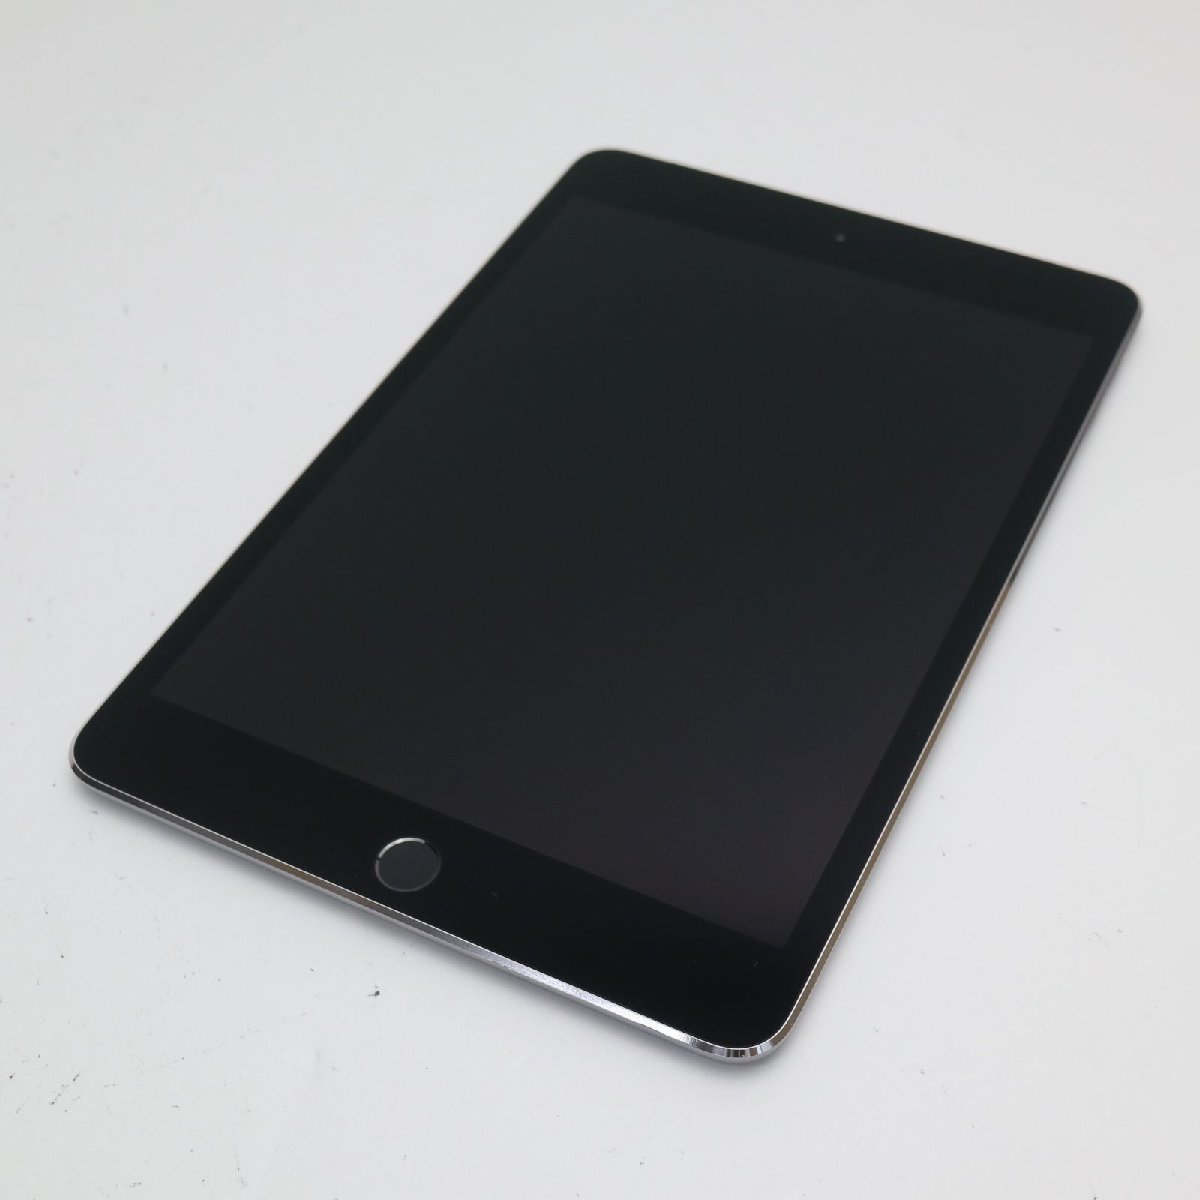 超美品 SIMフリー iPad mini 4 Cellular 16GB スペースグレイ 即日発送 タブレットApple 本体 あすつく 土日祝発送OK